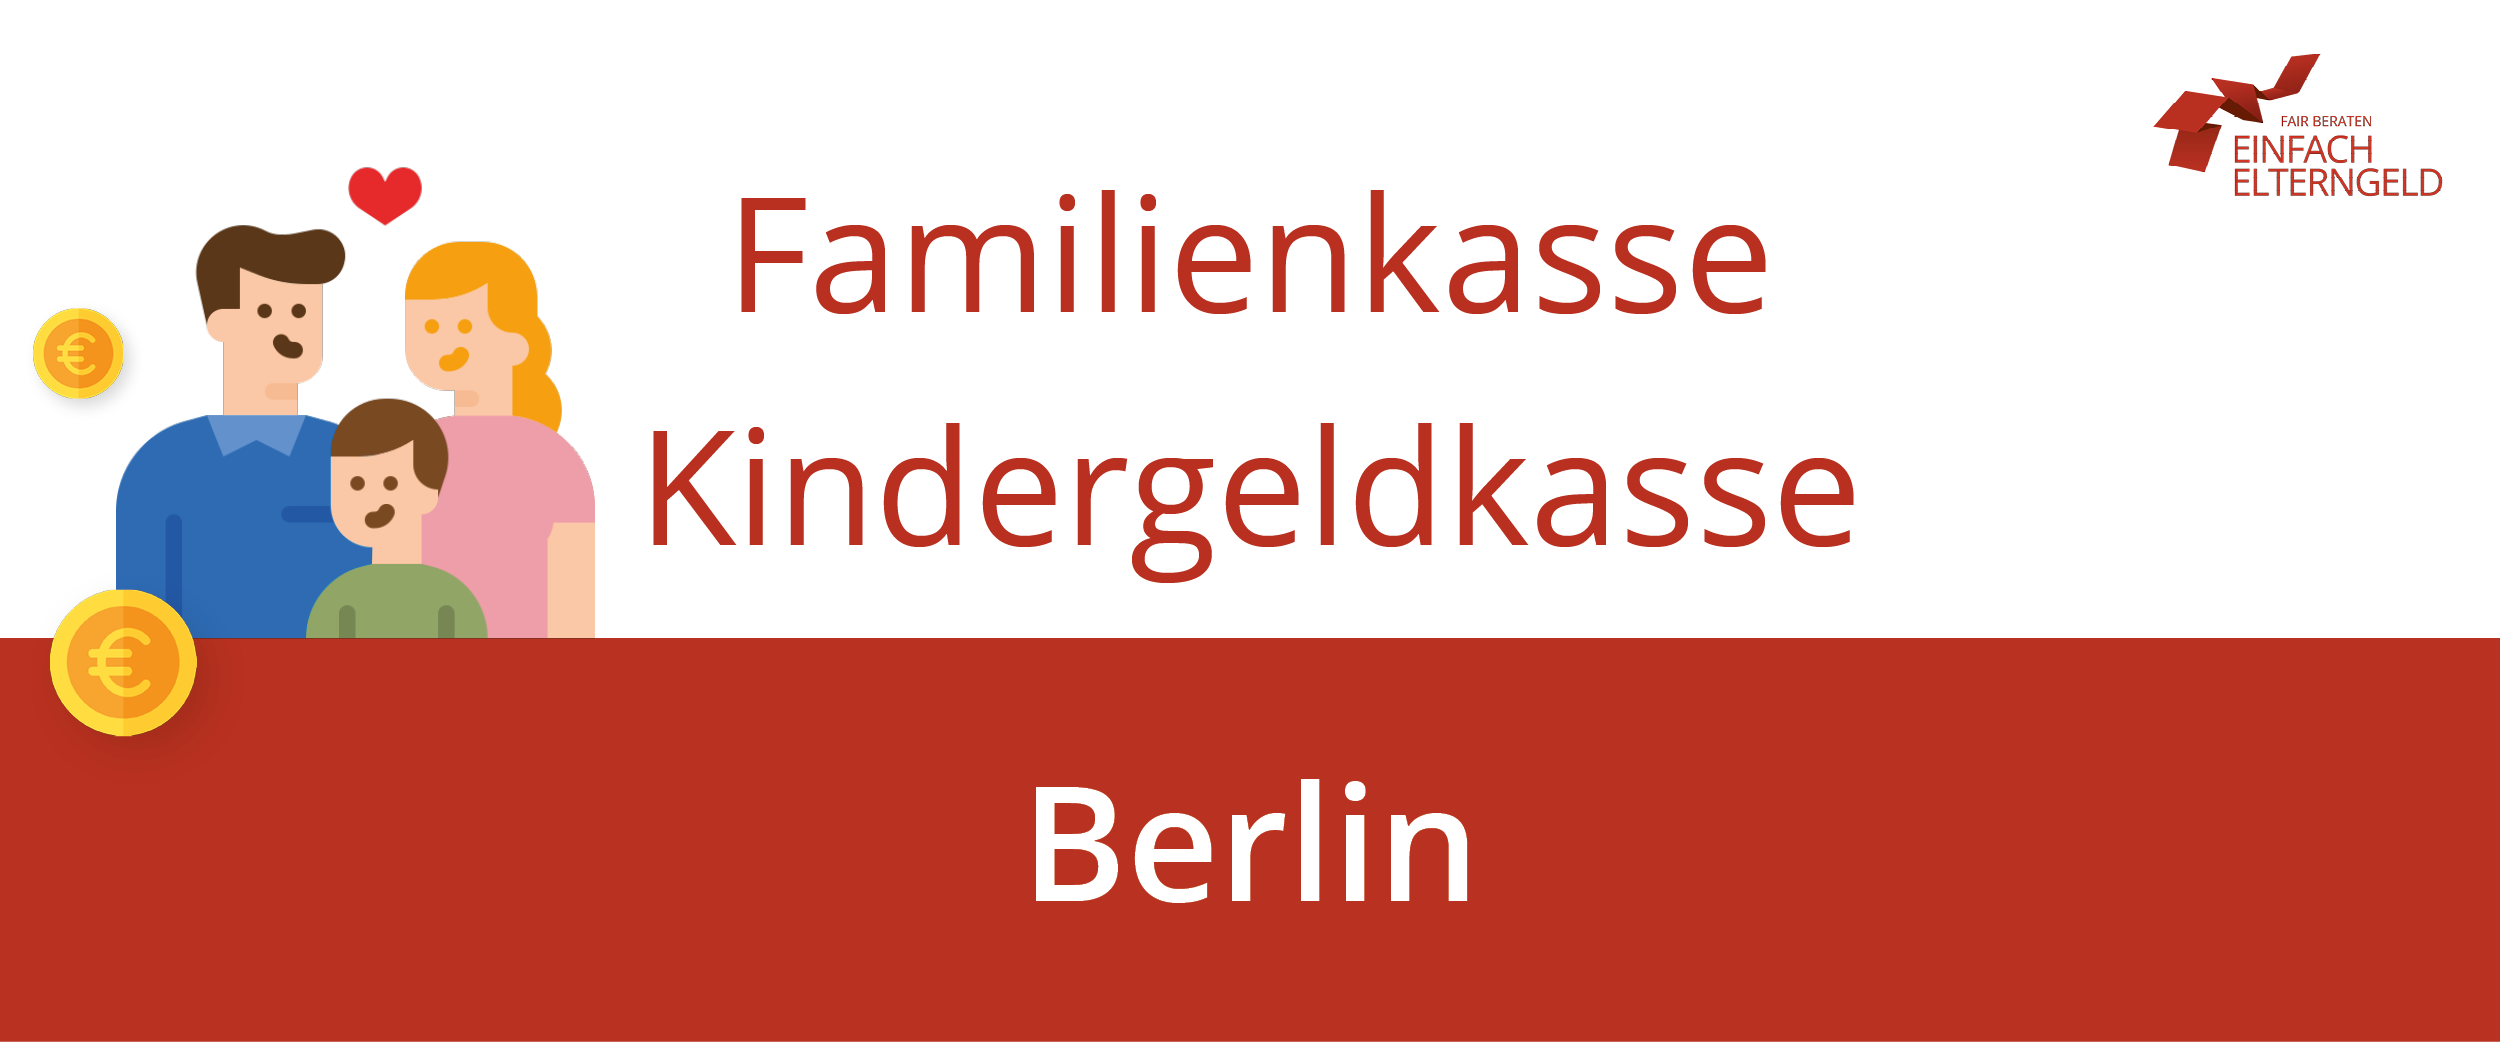 Informationen zur Familienkasse in Berlin finden Sie hier.